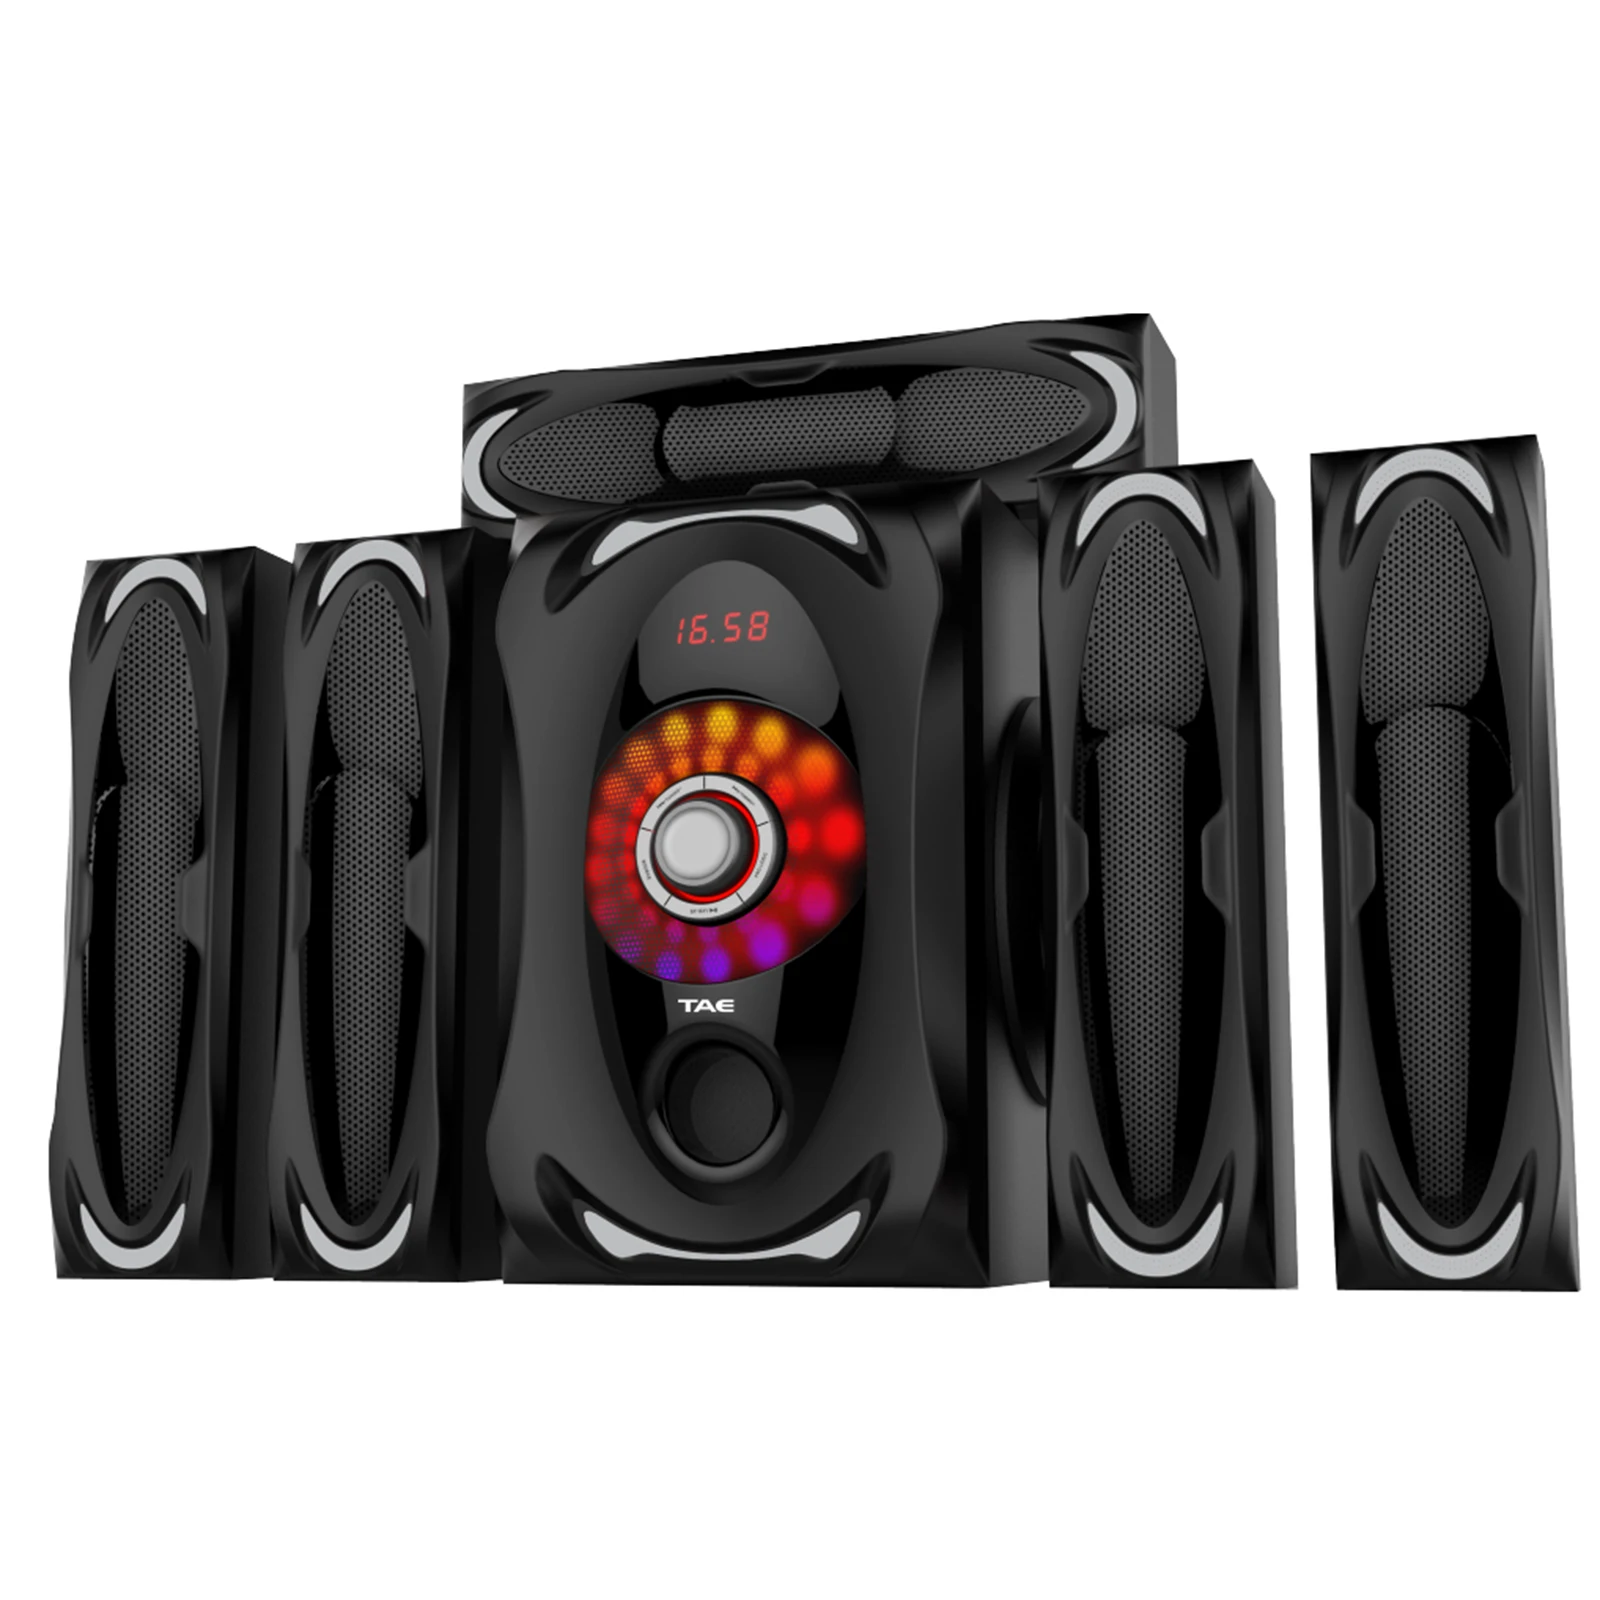 TK-903-3.1 multimedia speaker home theater speaker with USB/BT/SD